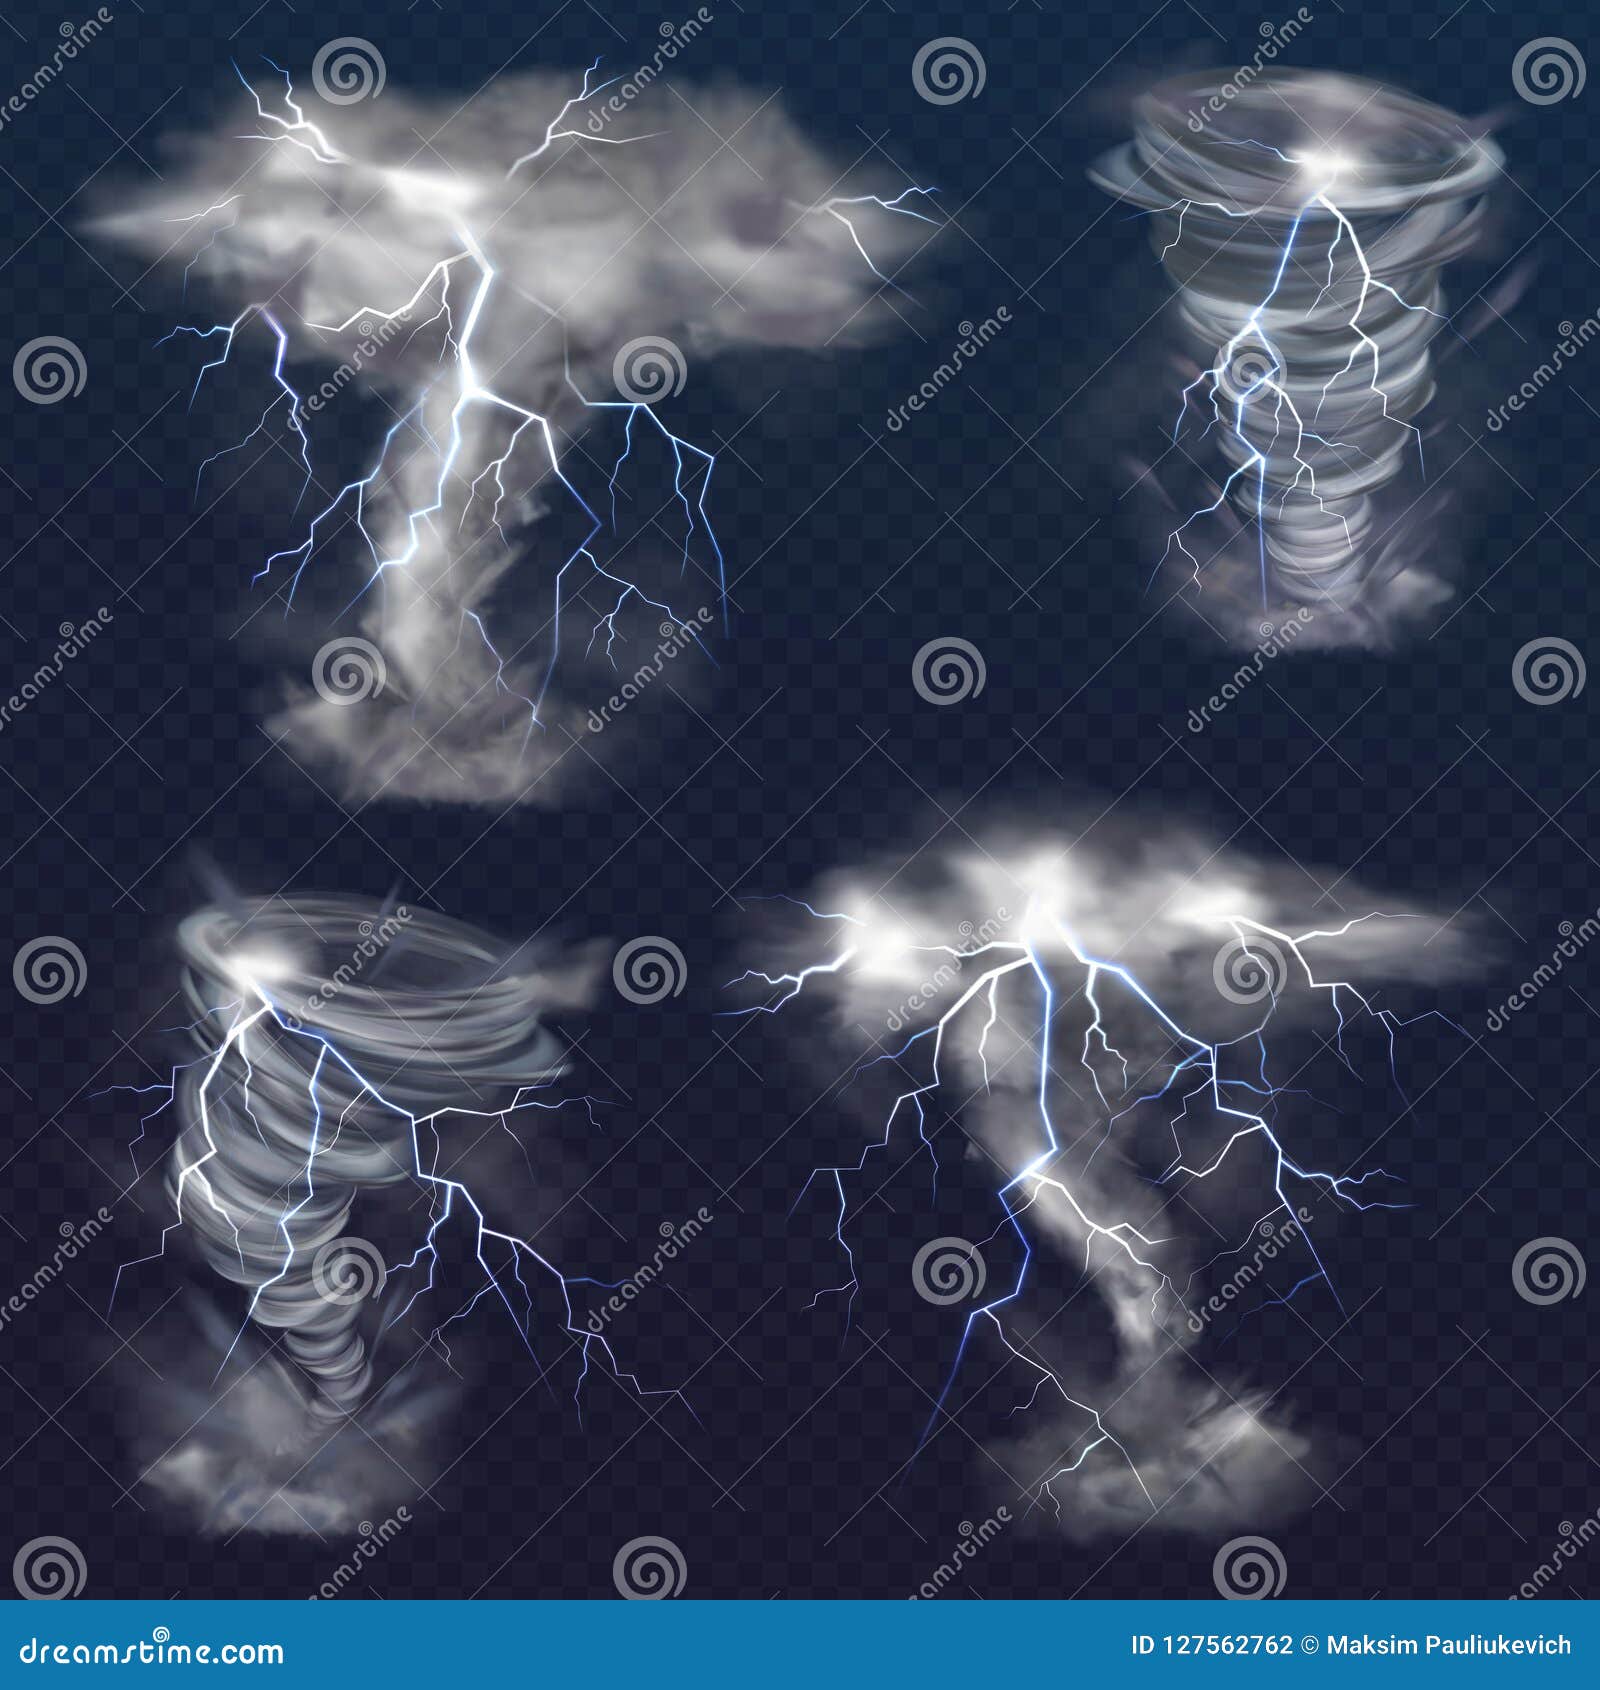 龙卷风素材-龙卷风图片-龙卷风素材图片下载-觅知网